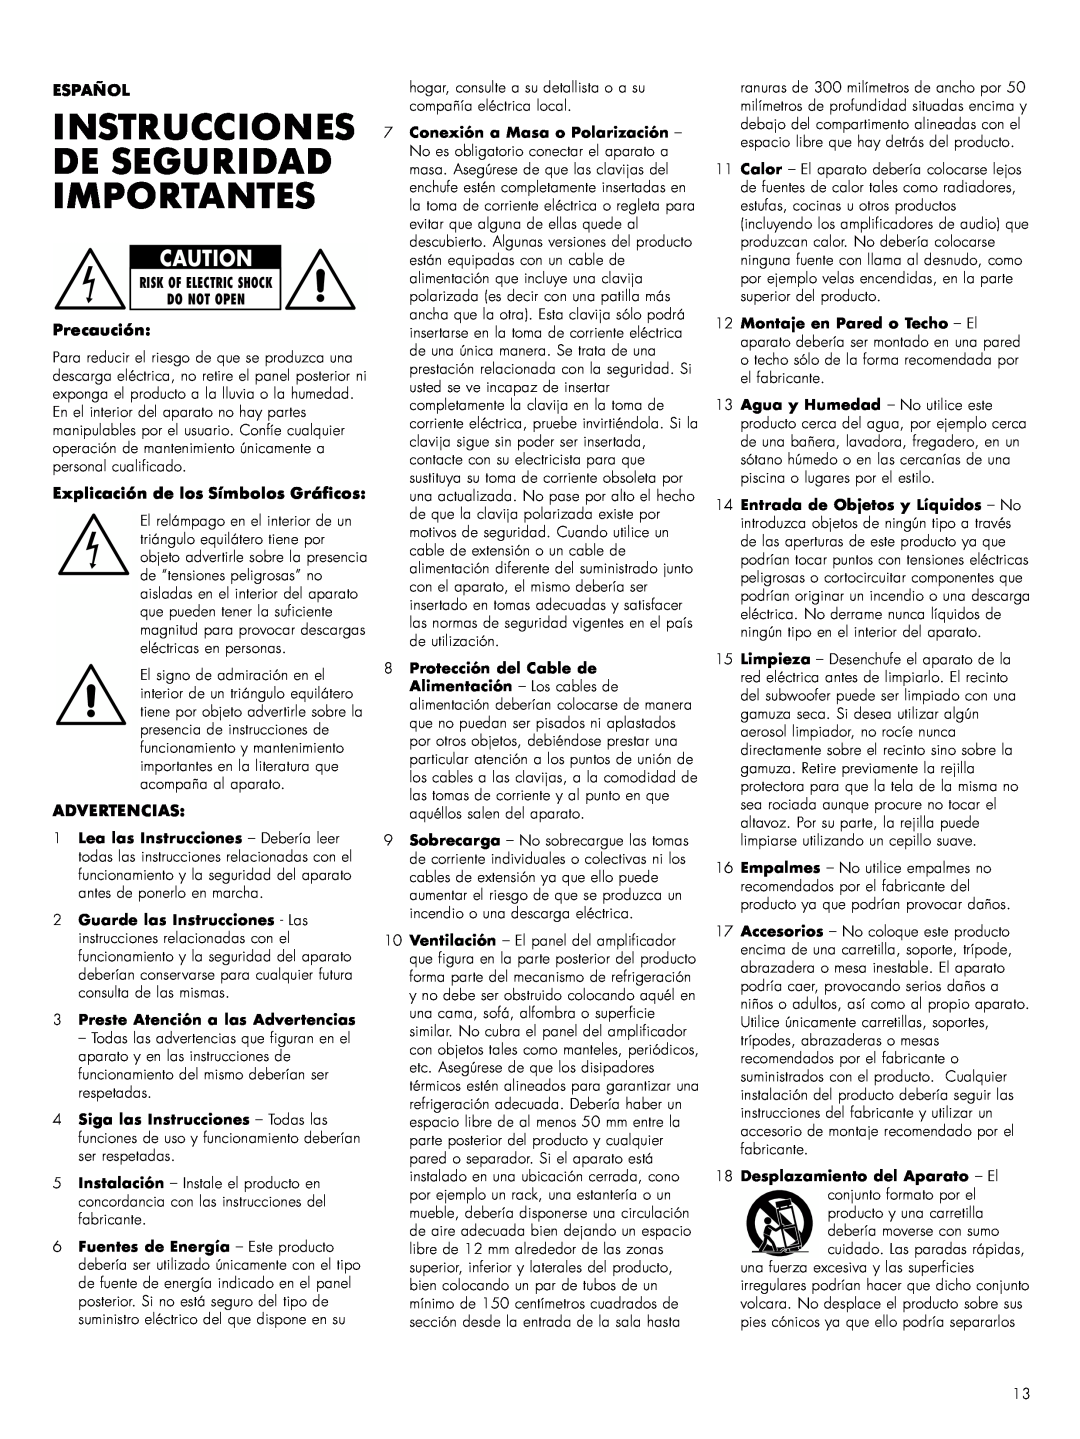 Bowers & Wilkins ASWCM Instrucciones De Seguridad Importantes, Español, Precaución, Explicación de los Símbolos Gráficos 